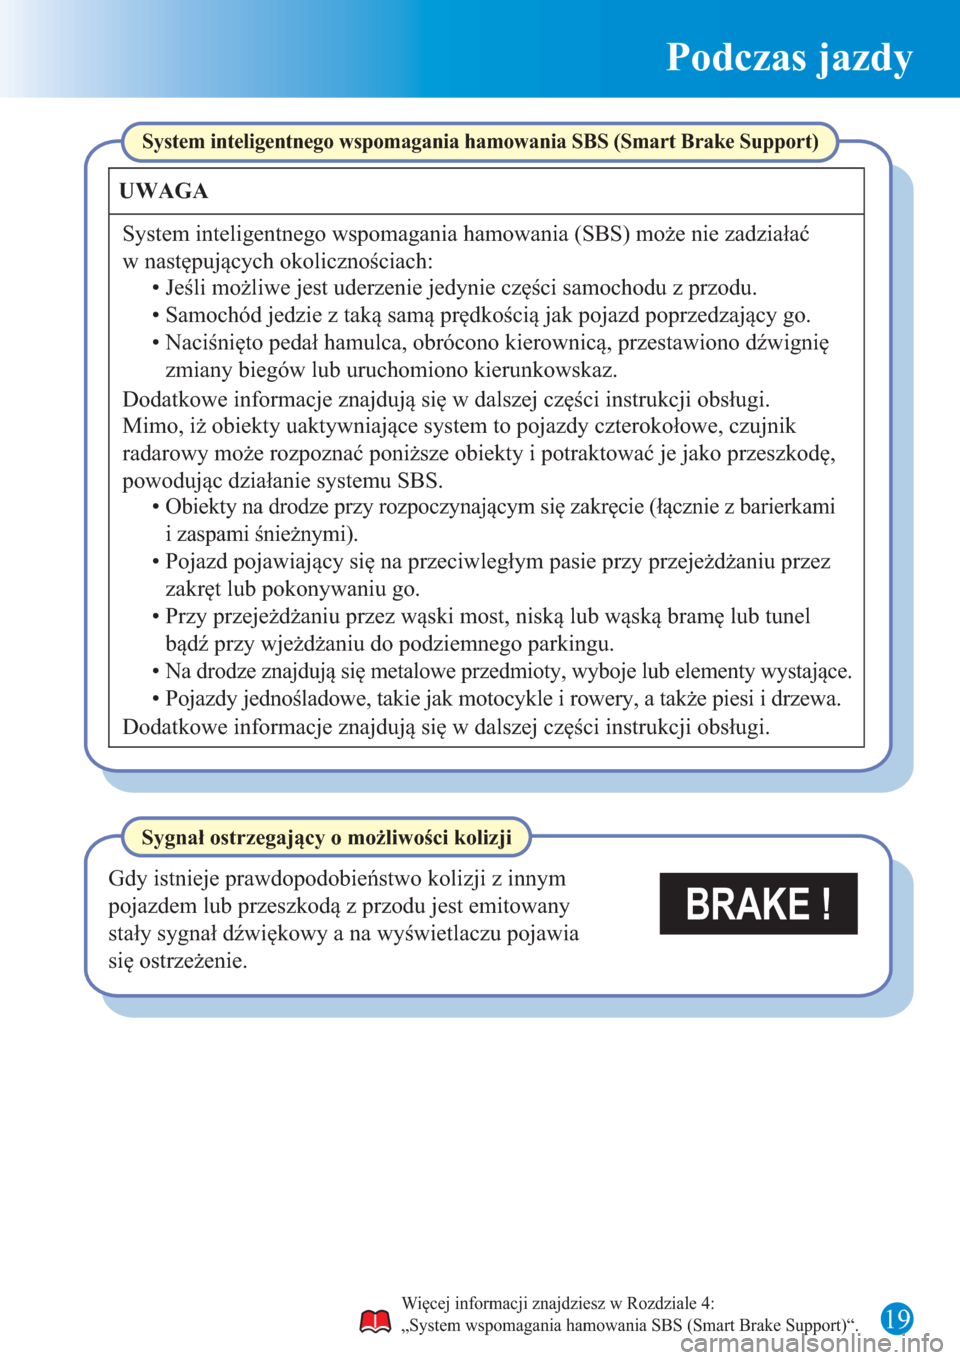 MAZDA MODEL CX-3 2015  Krótki Przewodnik (in Polish)  Podczas jazdy
19
BRAKE !
System inteligentnego wspomagania hamowania SBS (Smart Brake Support)
UWAGA
System inteligentnego wspomagania hamowania (SBS) może nie zadziałać 
w następujących okoliczn